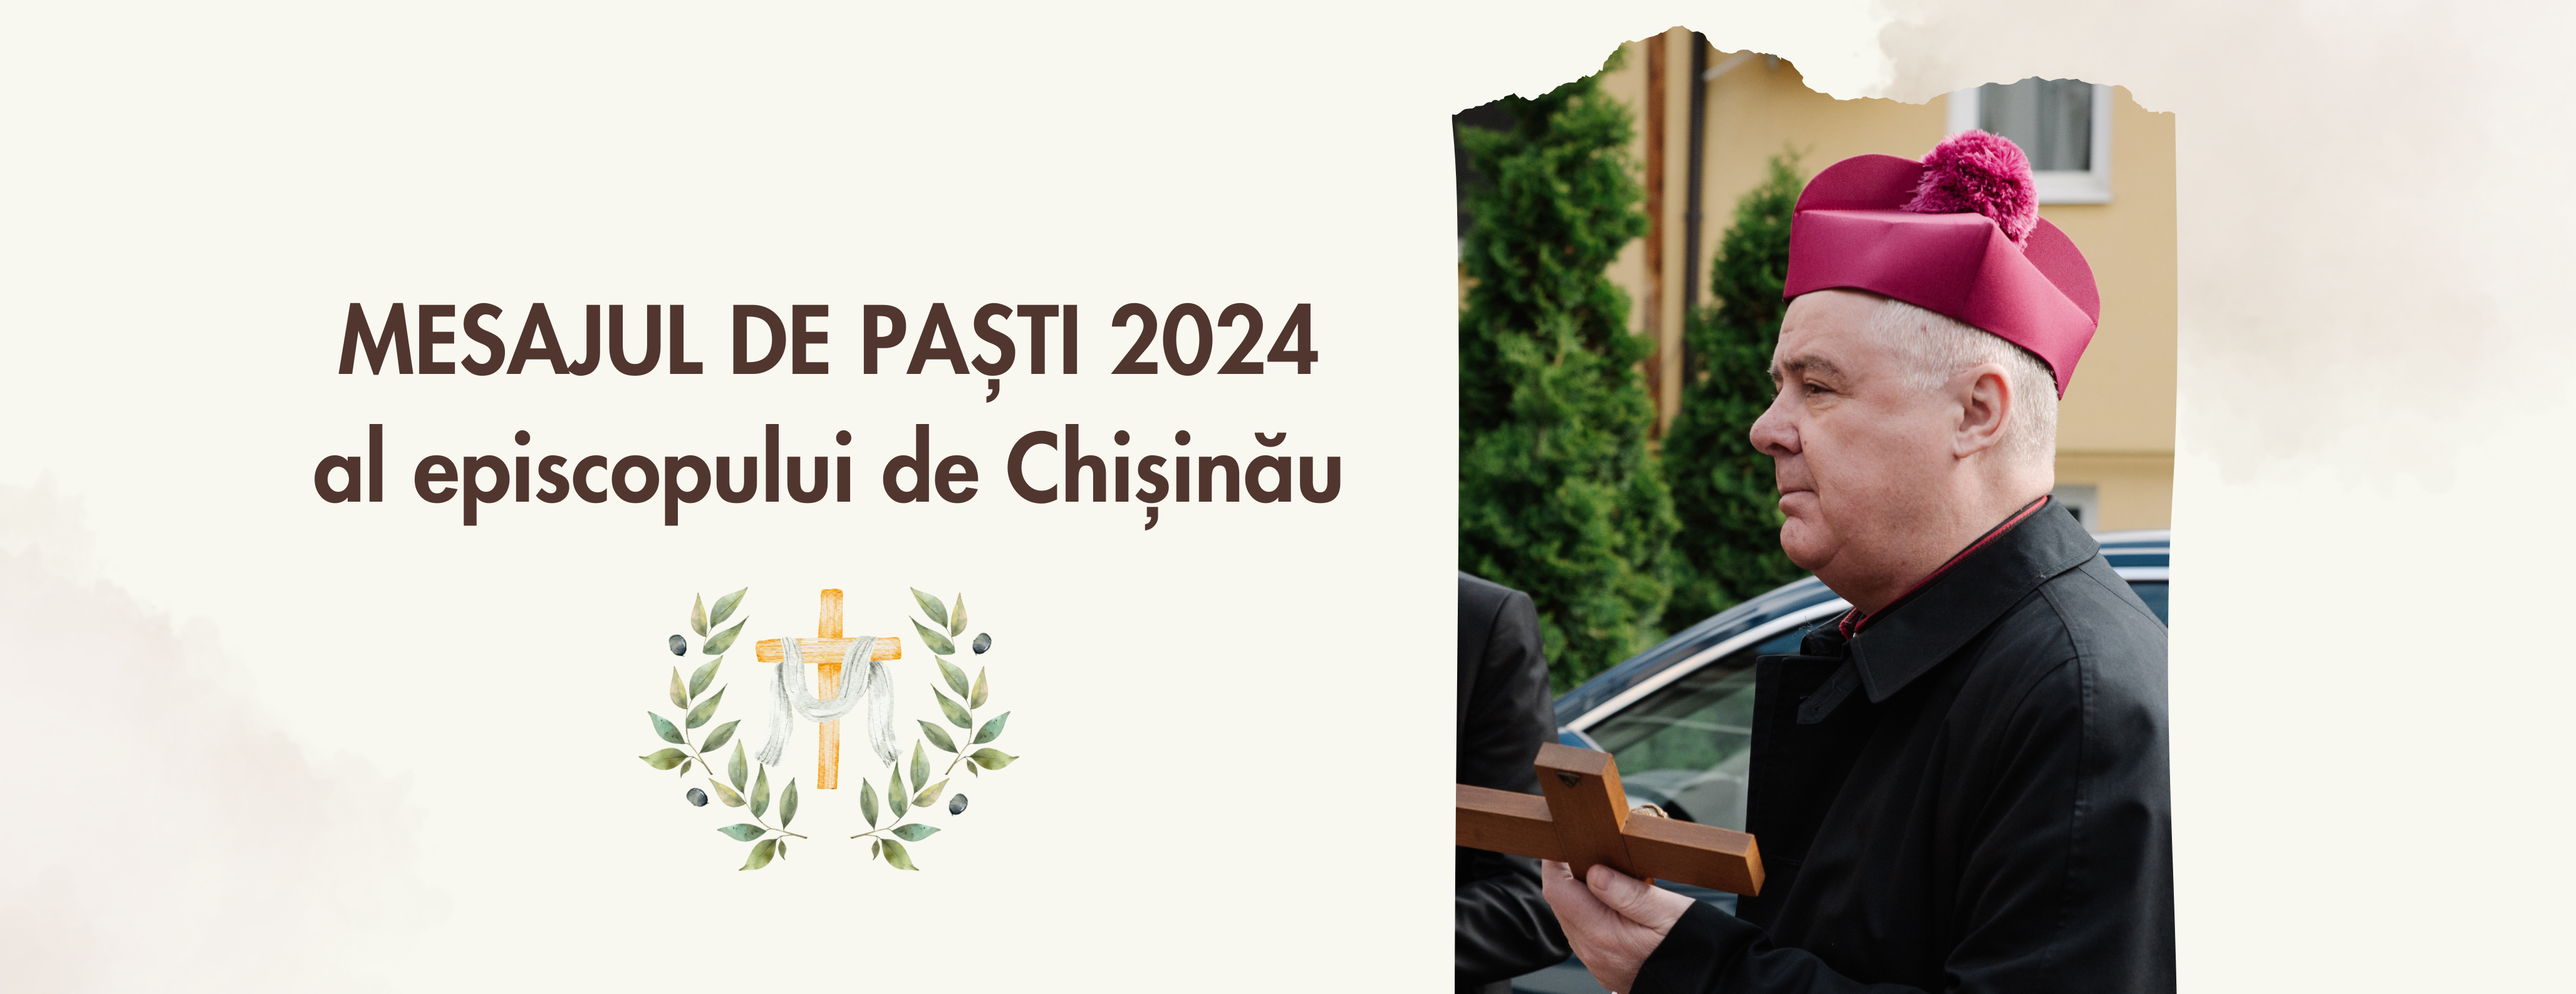 MESAJUL DE PAȘTI 2024 al episcopului de Chișinău